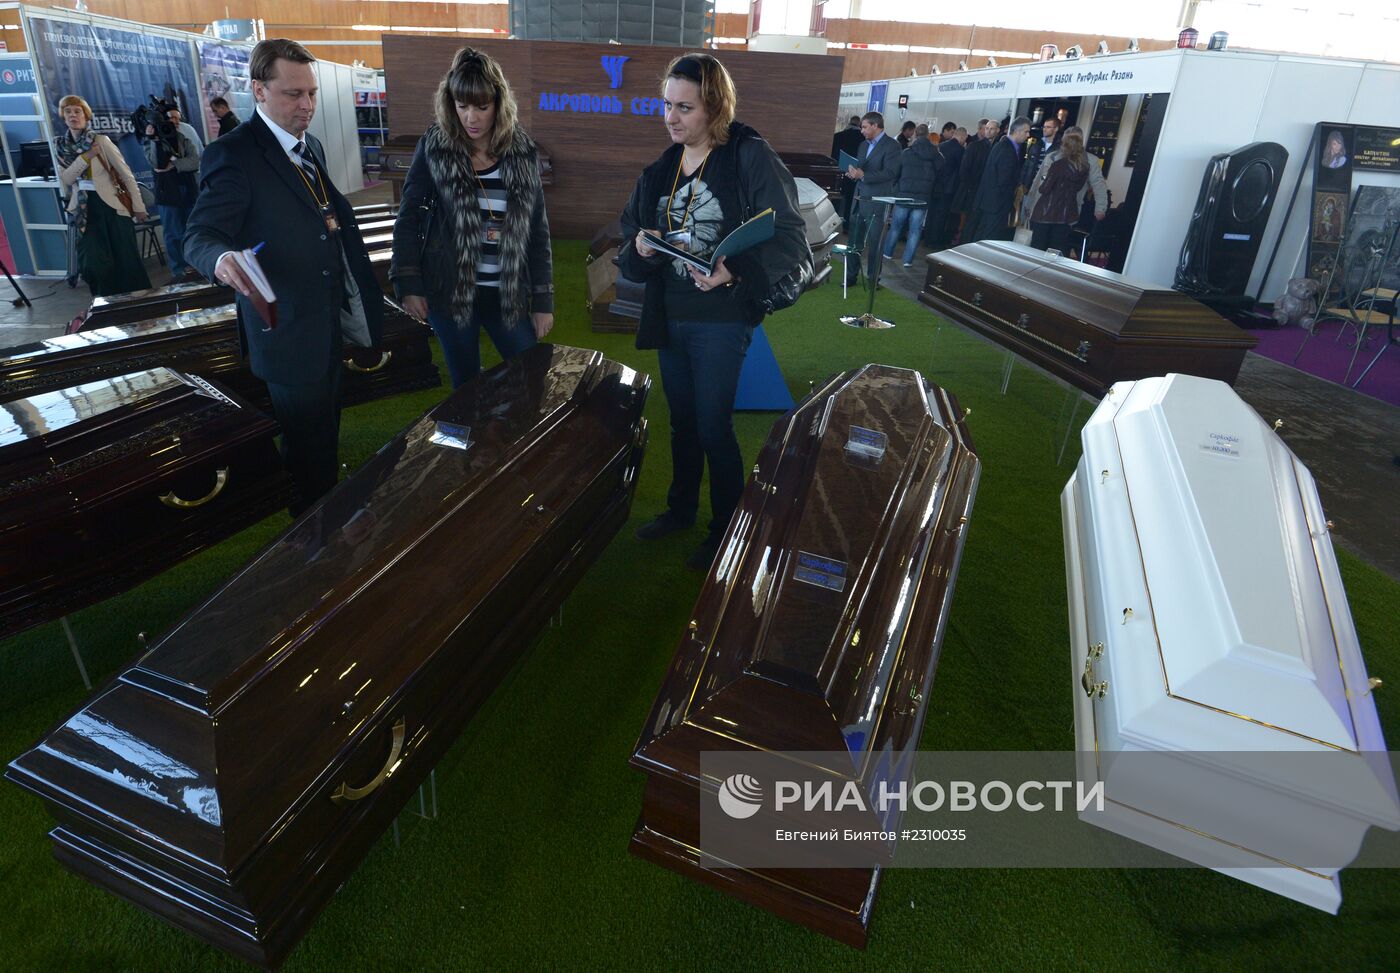 ХХI-я специализированная выставка похоронных услуг "Некрополь-2013"